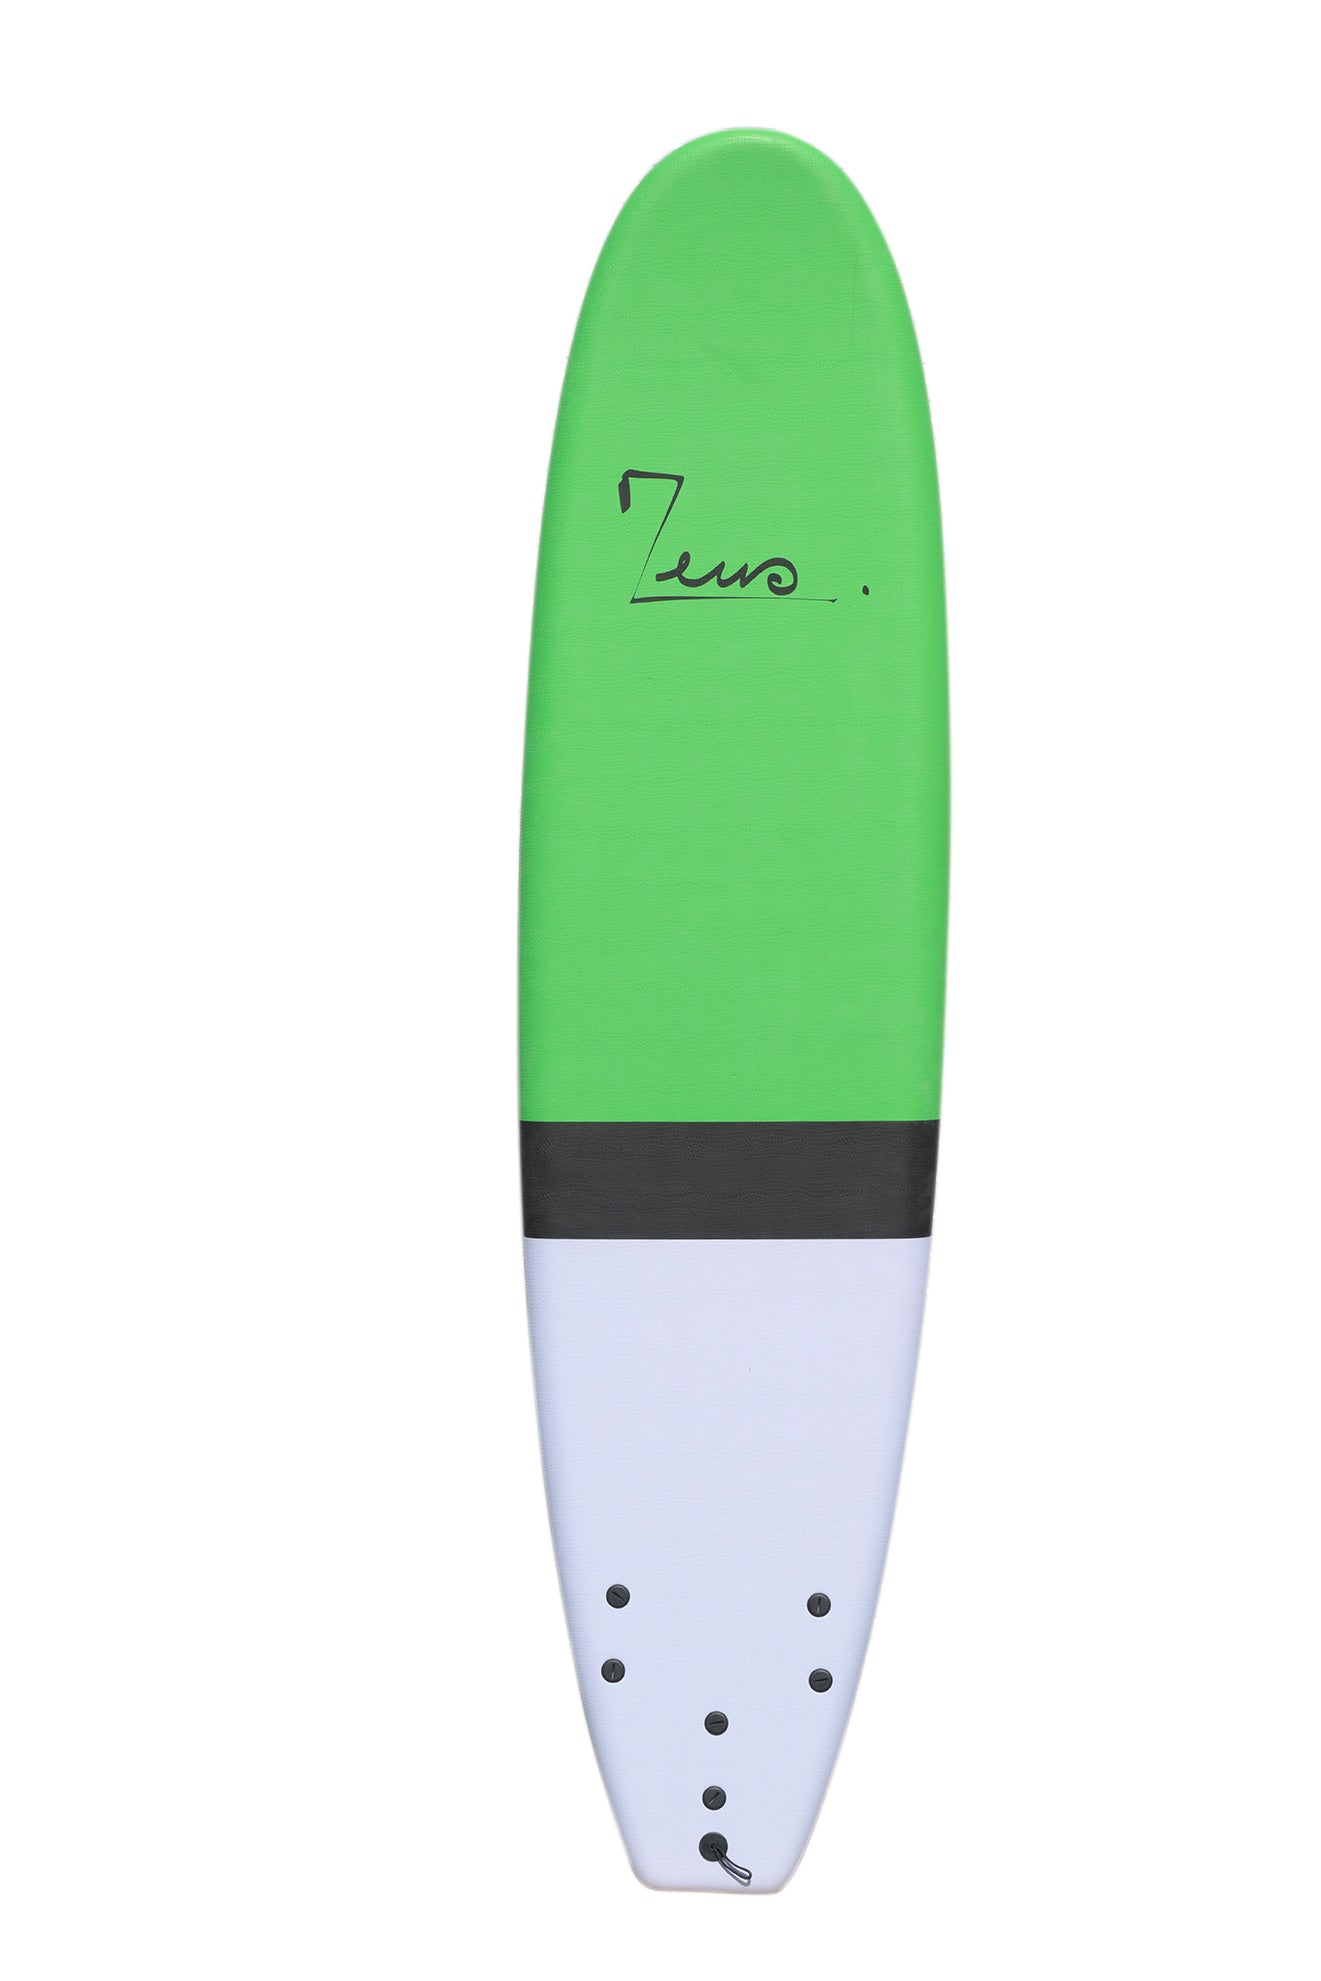 Zeus Rosa 7'6product_type#surf_#surfshop#_zeus-surfboards_